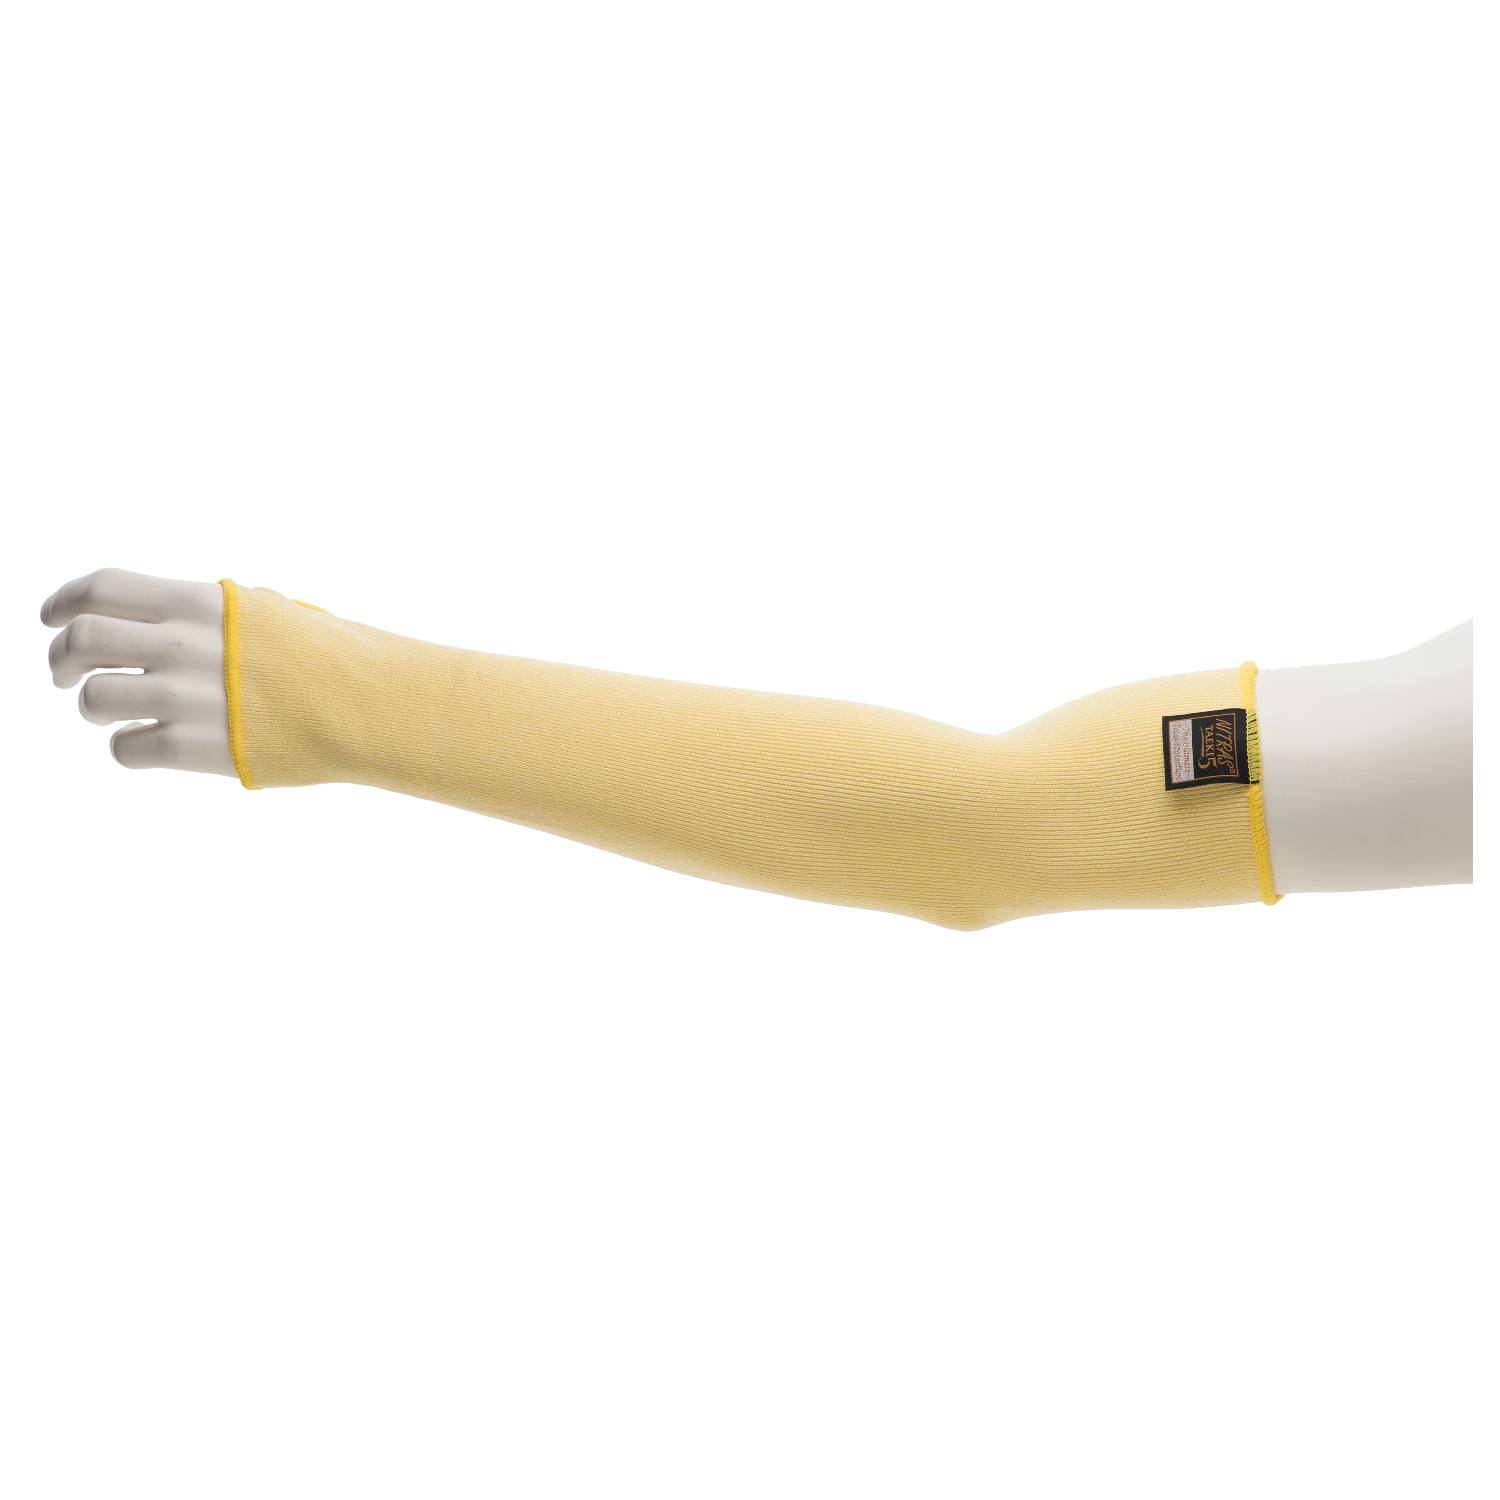 NITRAS TAEKI5 Schnitt- und Hitzeschutz-Armschoner, gelb, 45cm mit Daumenloch